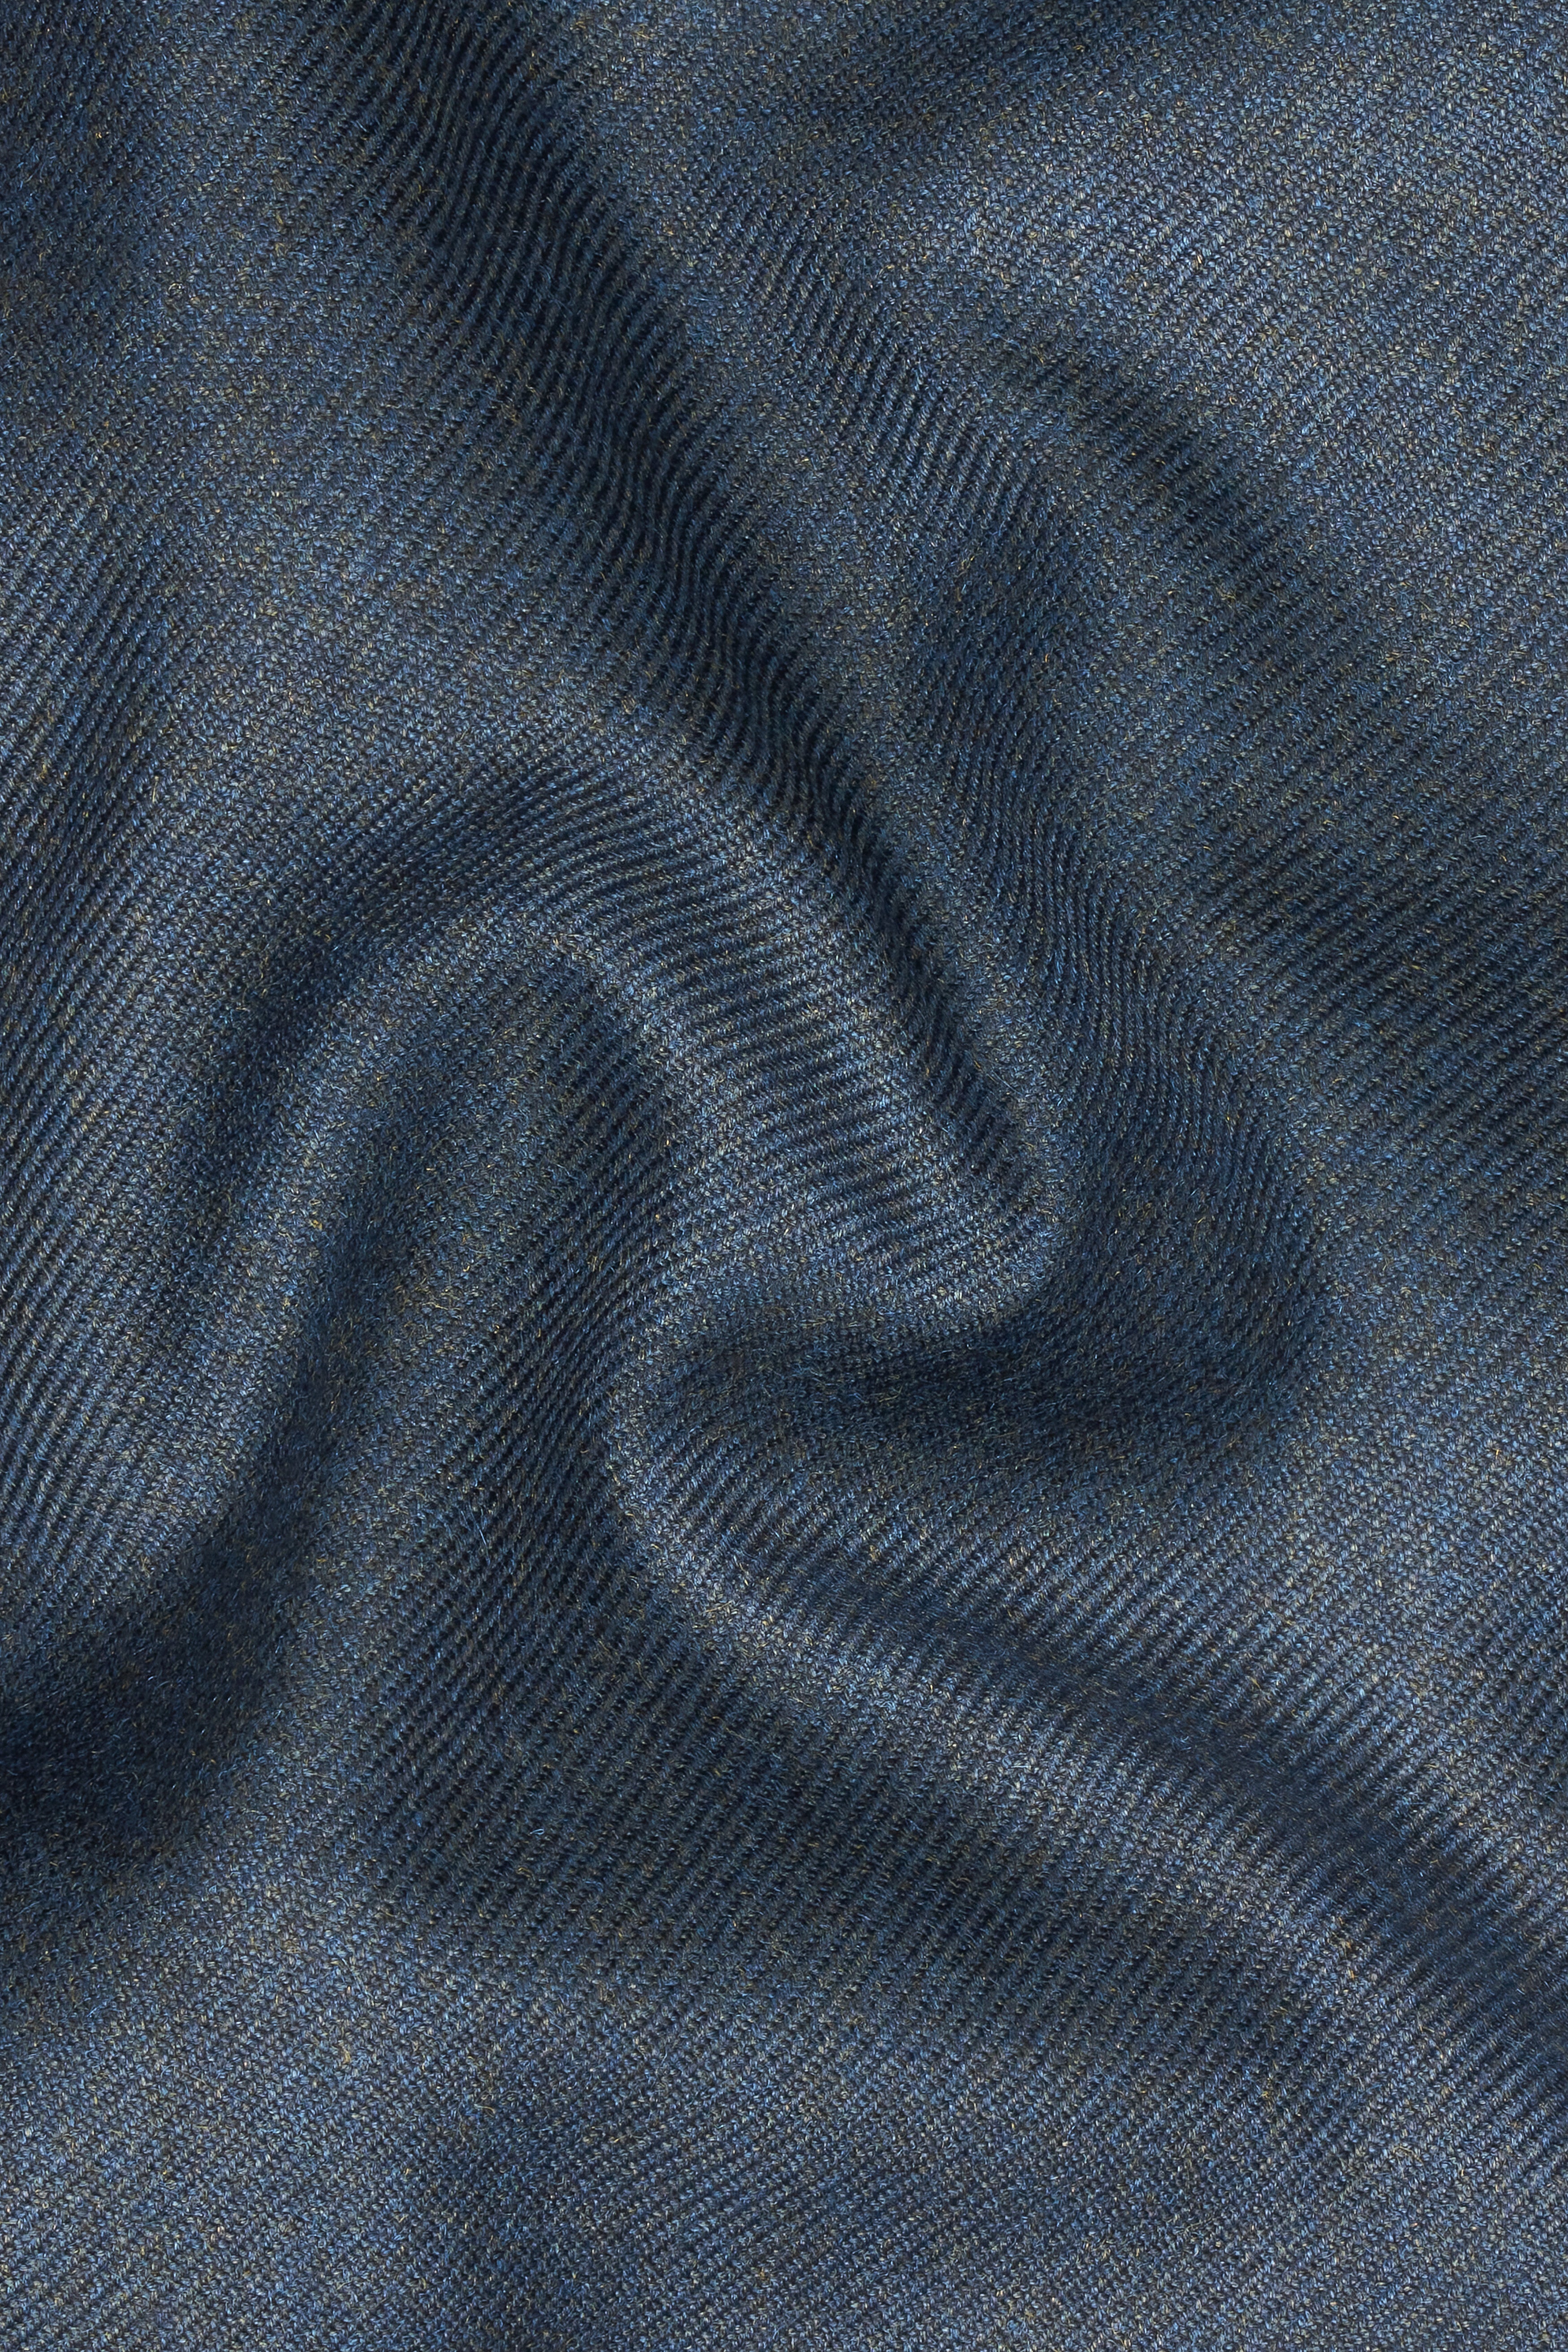 Spruce Blue Tweed Pant T2735-28, T2735-30, T2735-32, T2735-34, T2735-36, T2735-38, T2735-40, T2735-42, T2735-44